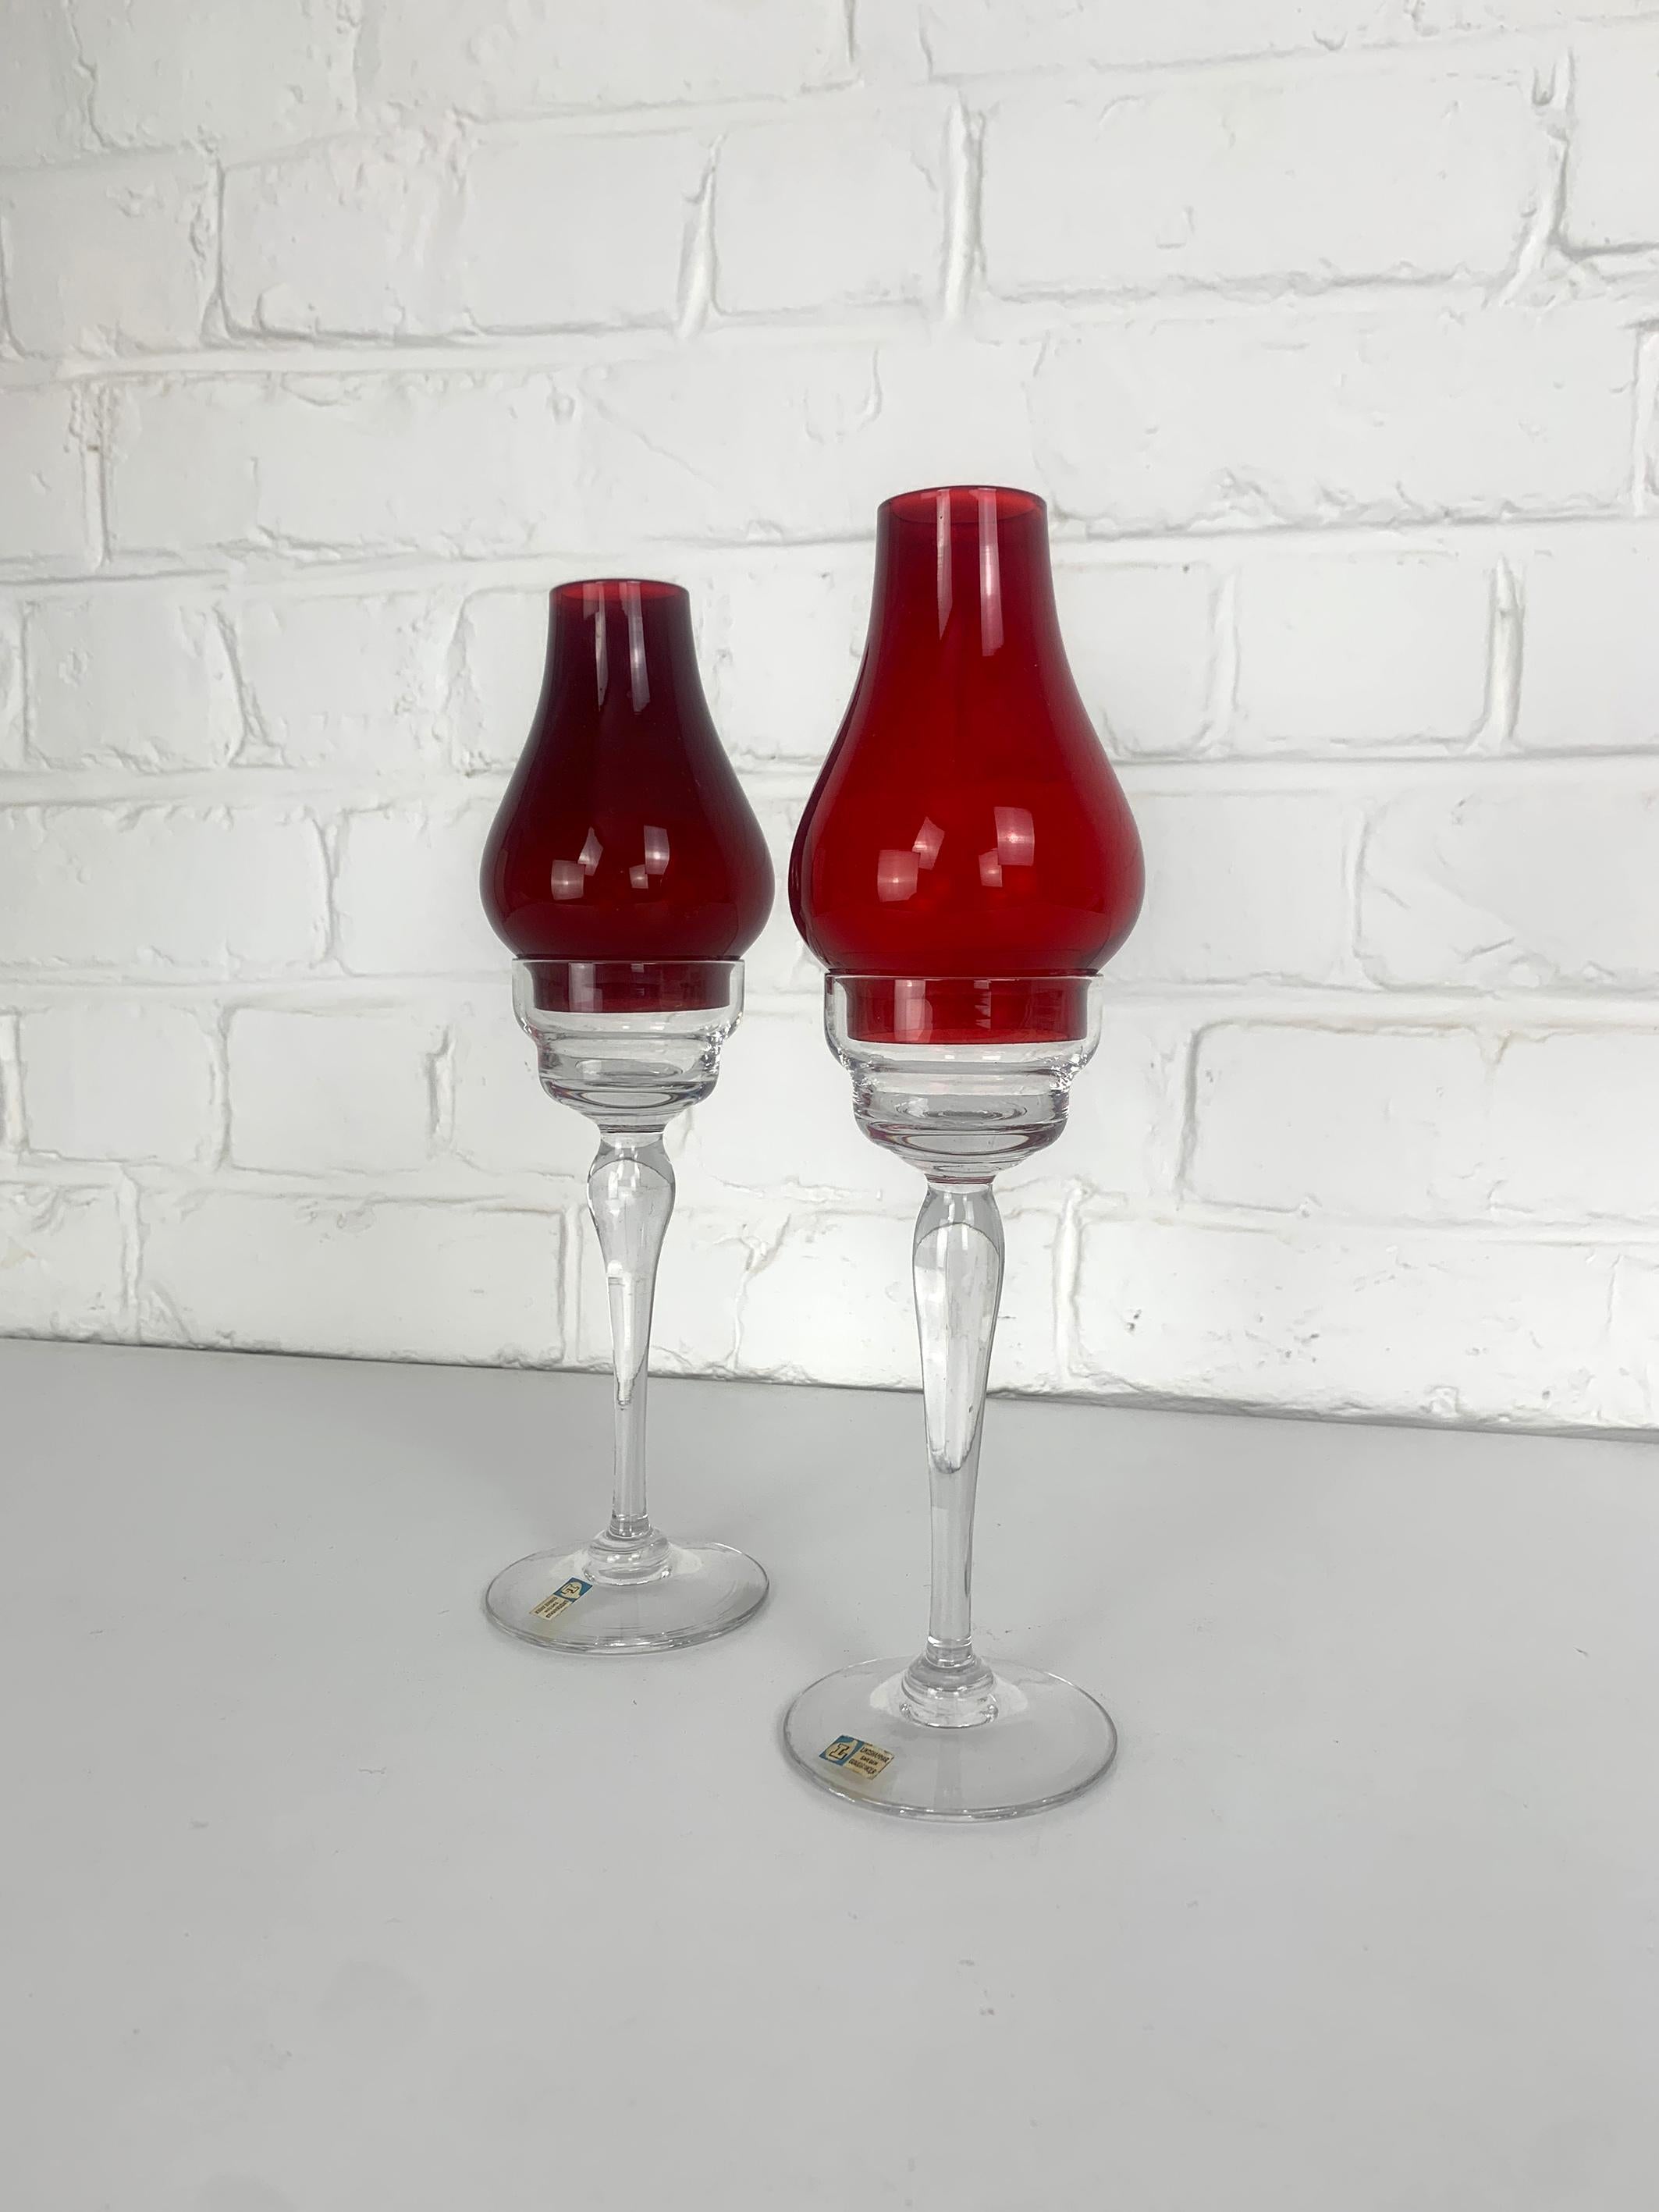 Ein Paar schwedische Kandelaber der Moderne von Gunnar Ander. Produziert von Lindshammar Glasbruk in Schweden. 

Der Sockel der Kerzenhalter ist aus klarem Glas, die Schirme aus rotem Glas (das Rot liegt etwas dazwischen).

Auf den Sockeln befinden